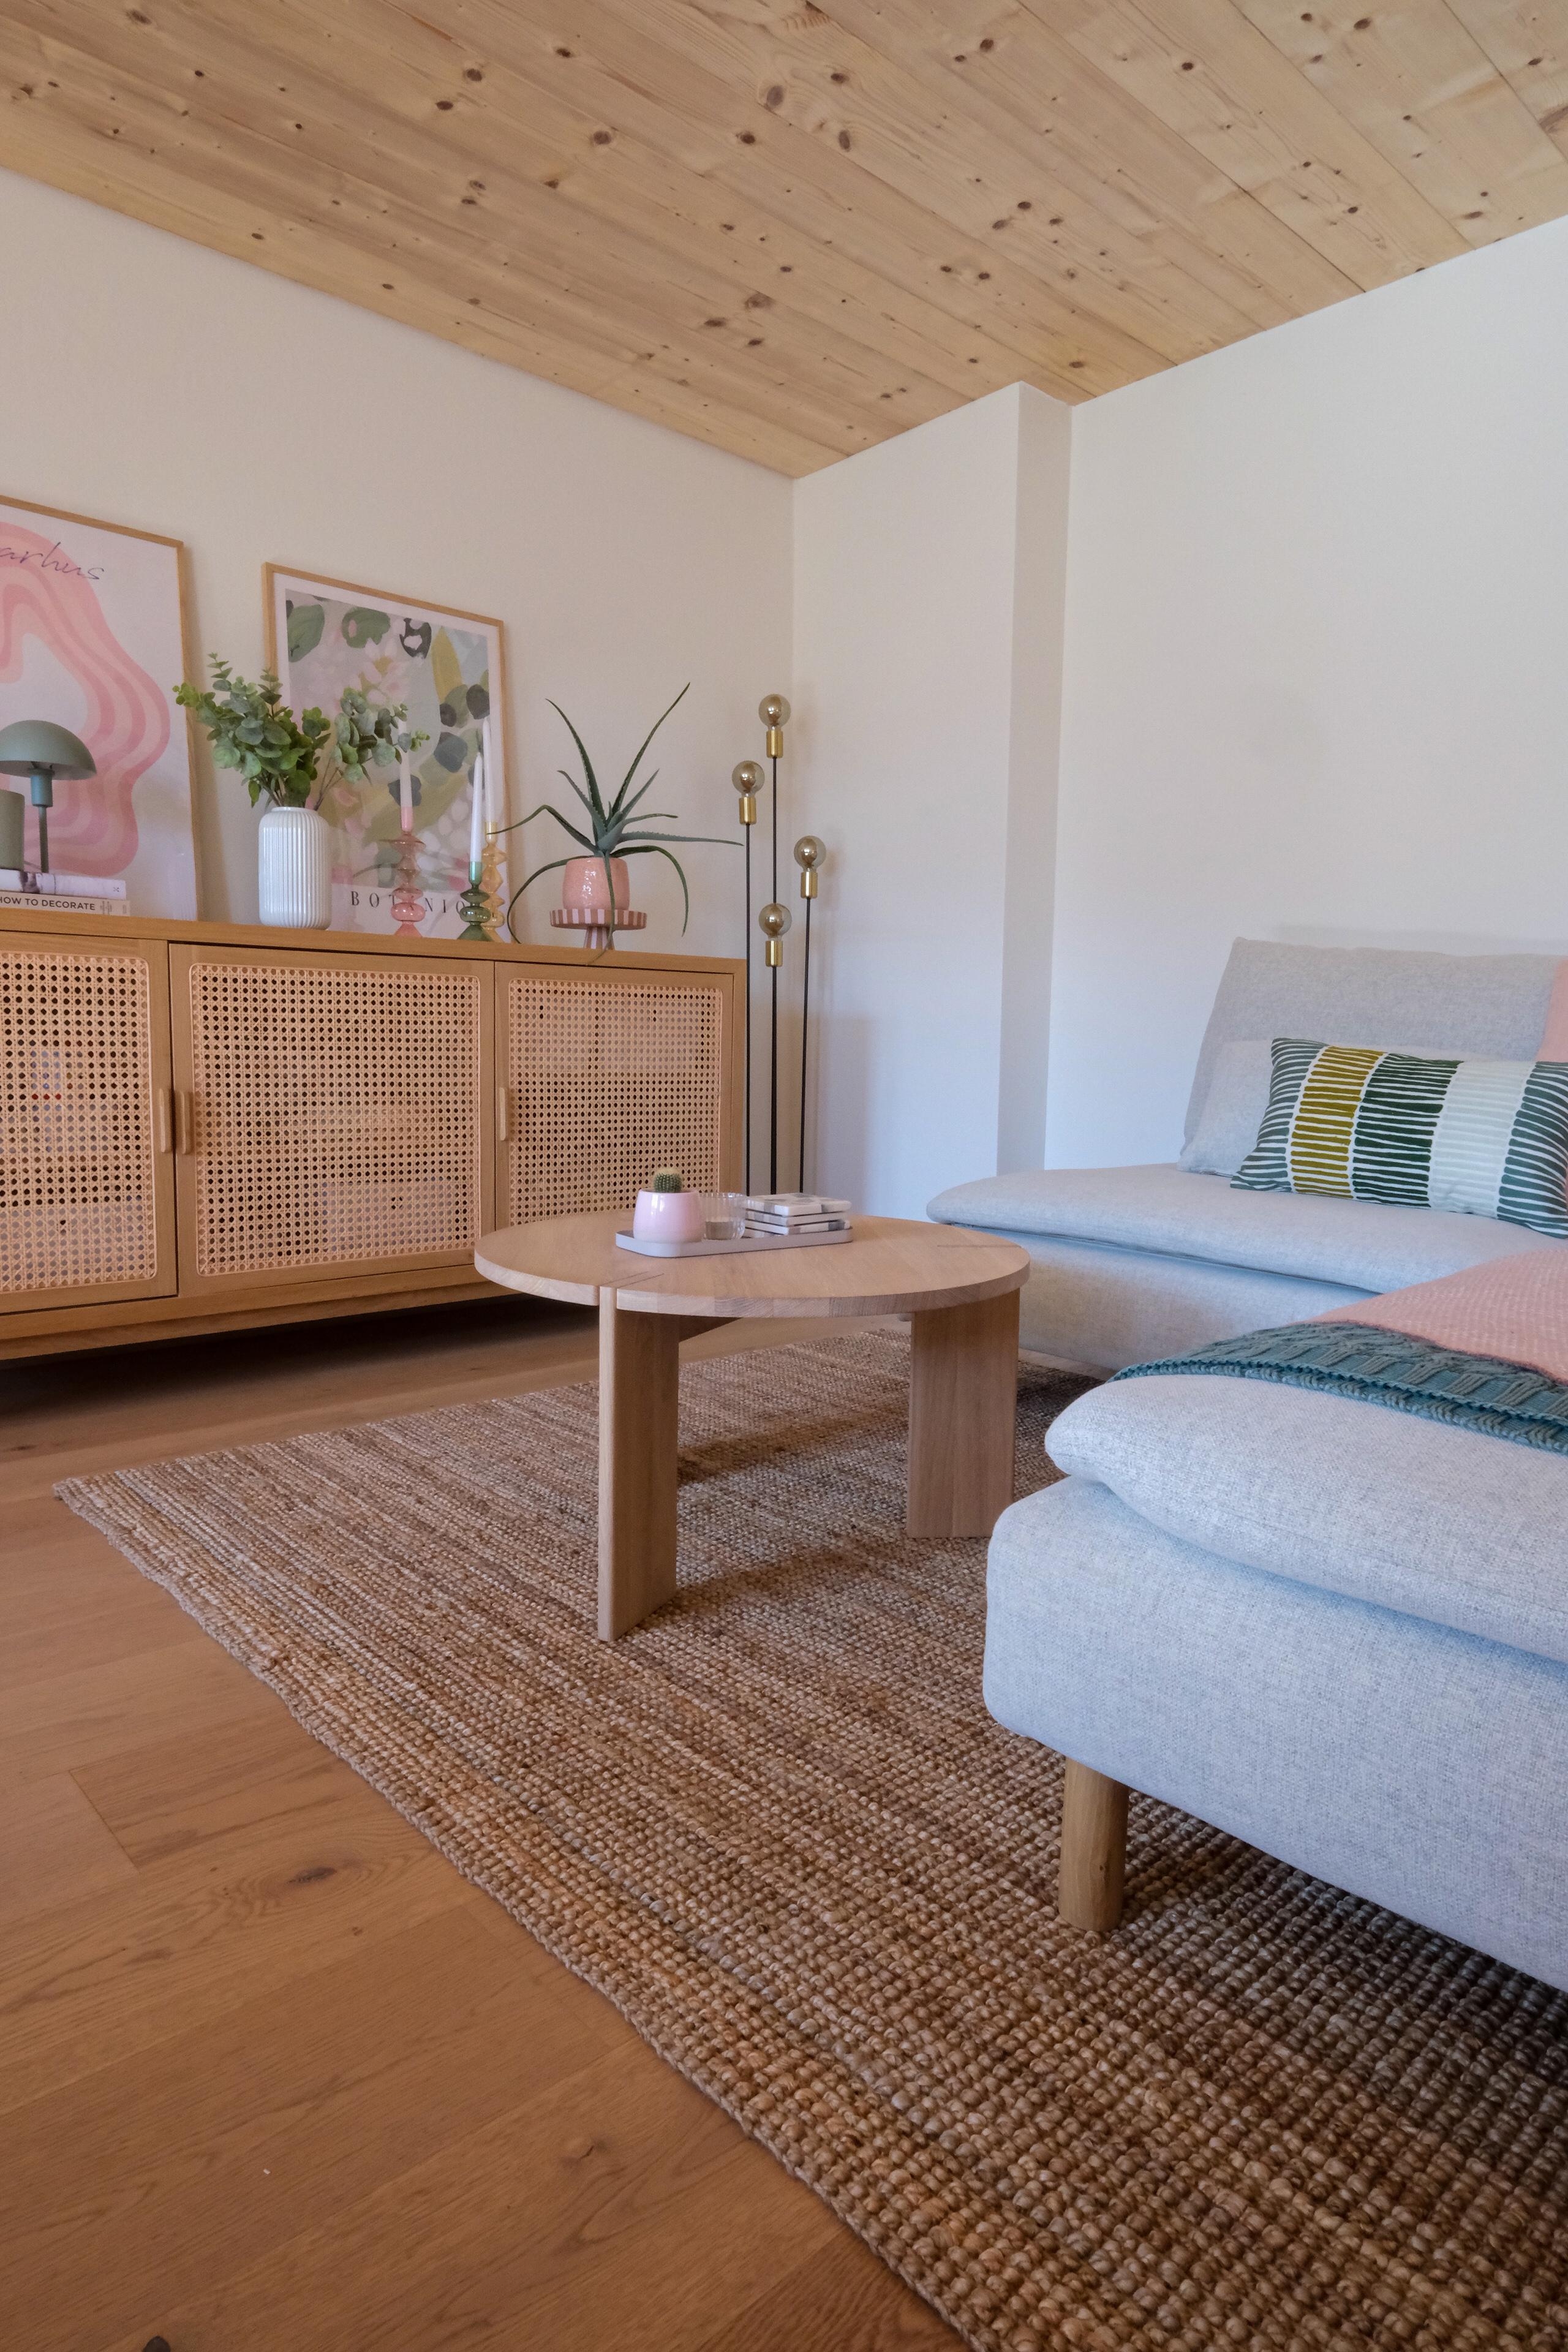 #Altbau #Landhaus #Wohnzimmer #Sideboard #Deko #Sofa #Cozy #Boho #Skandinavisch #Teppich #Sommer #Frühling #Bilder
#Ikea #MaisonduMonde #Oyoy #Desenio #Micasa